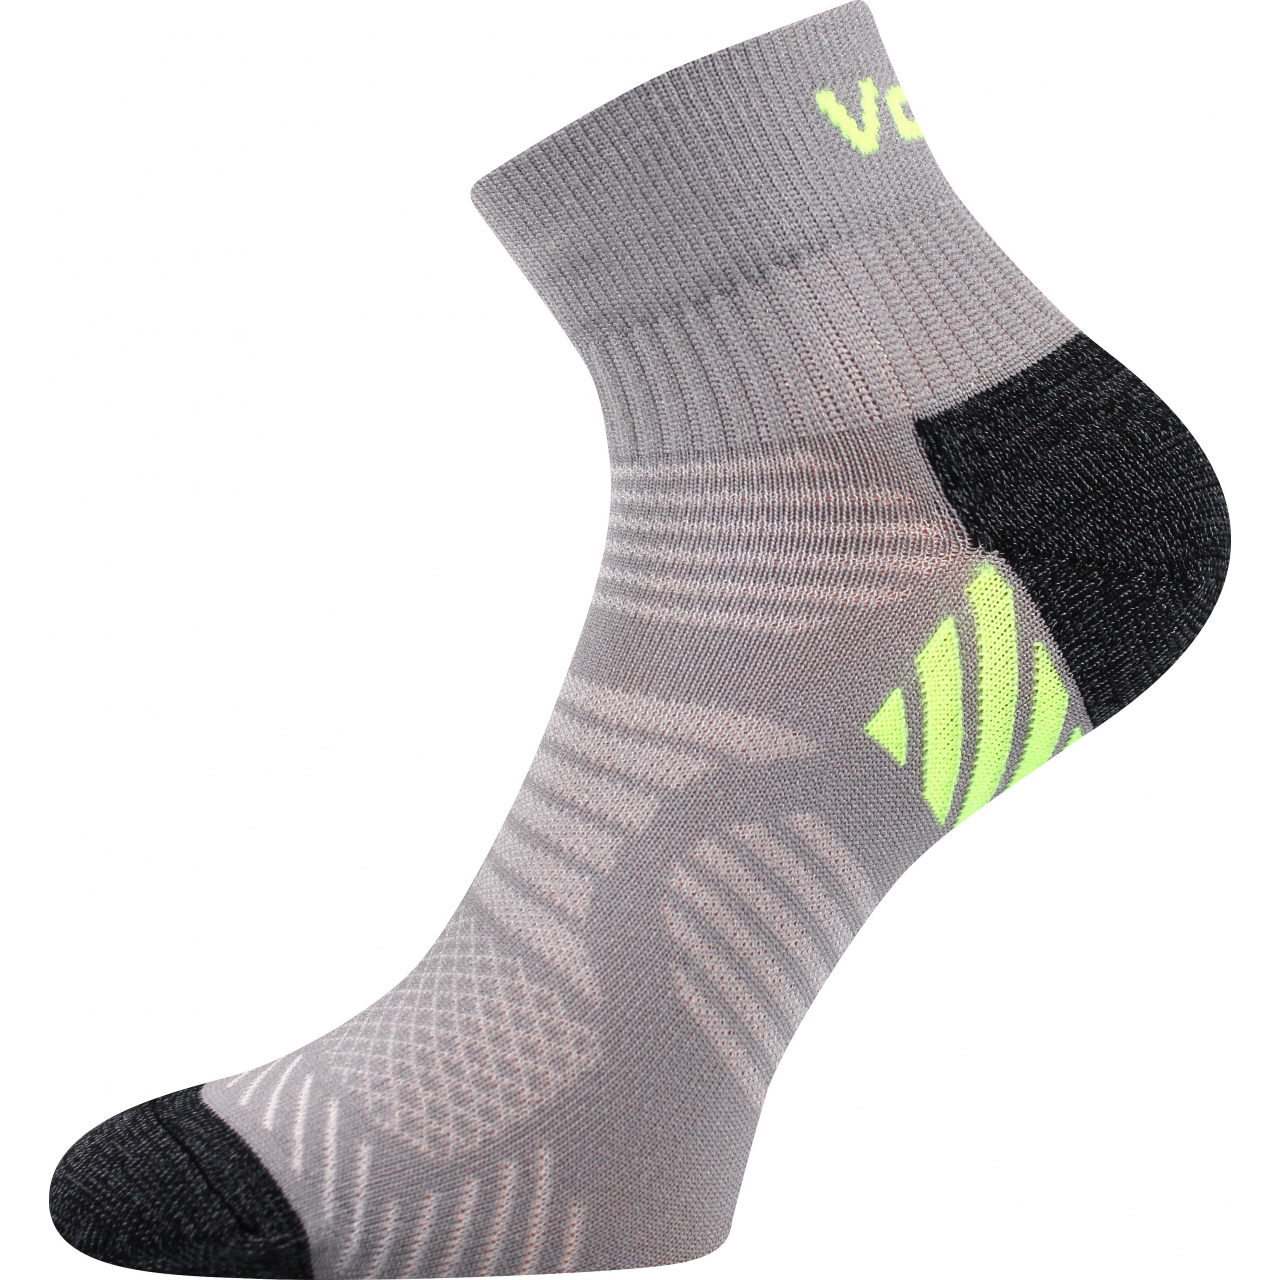 Ponožky unisex sportovní Voxx Raymond - šedé-zelené, 43-46